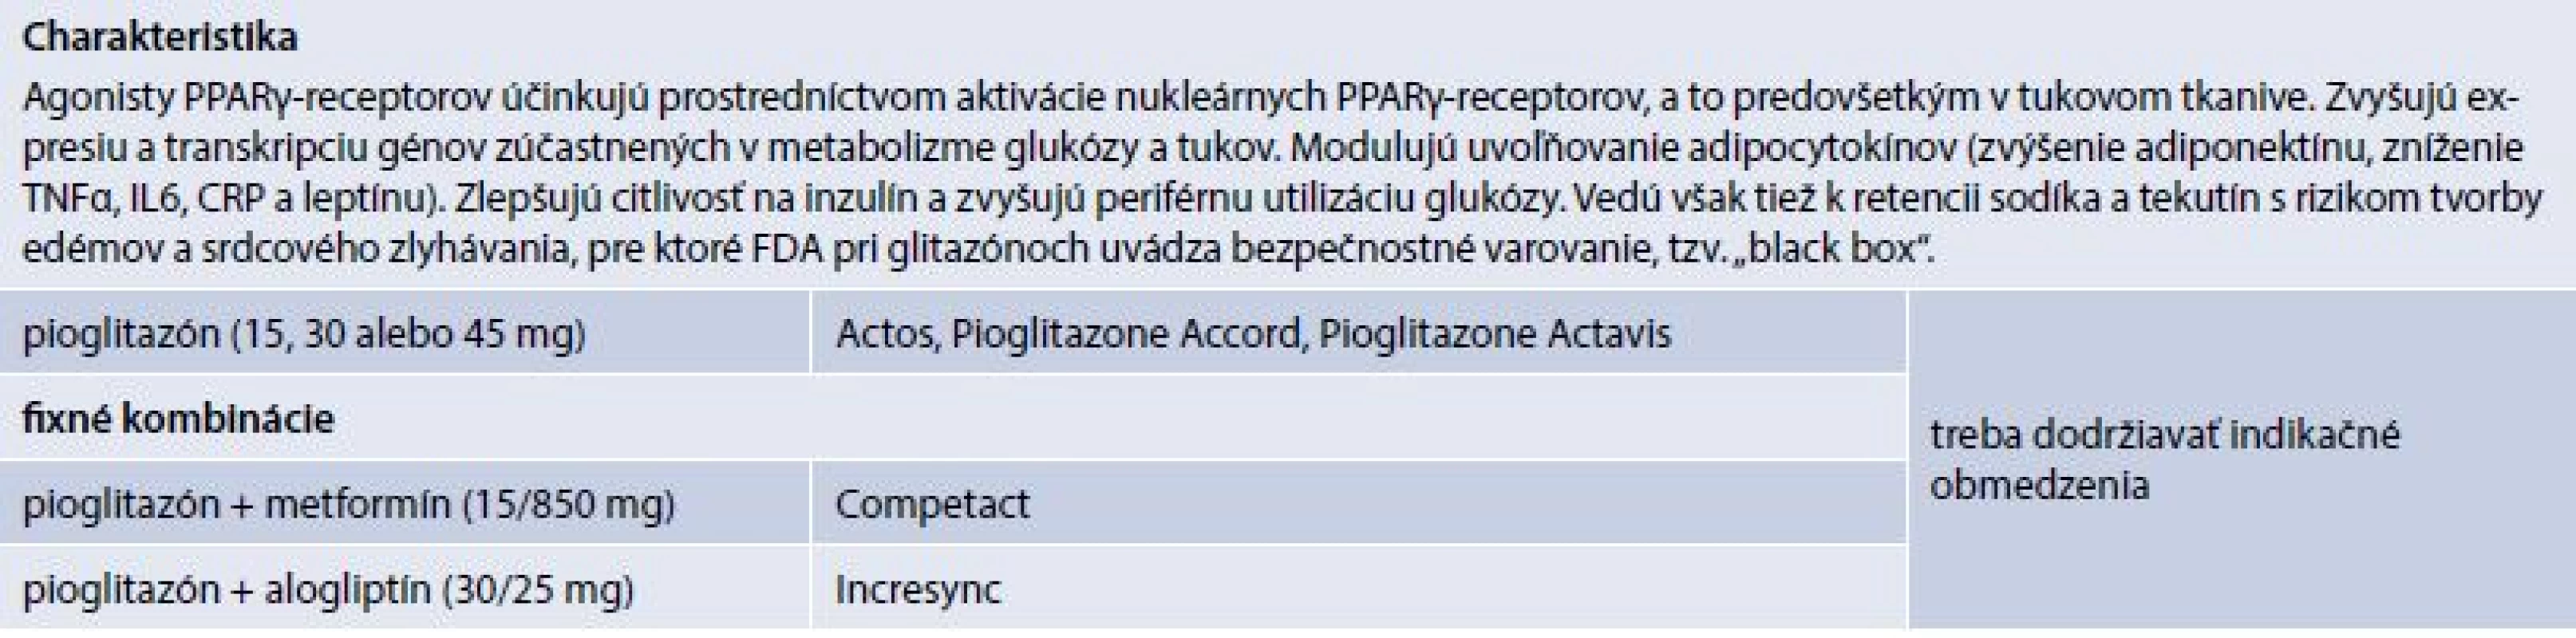 Charakteristika Agonisty PPARγ-recepotorov (prípravky kategorizované na Slovensku)